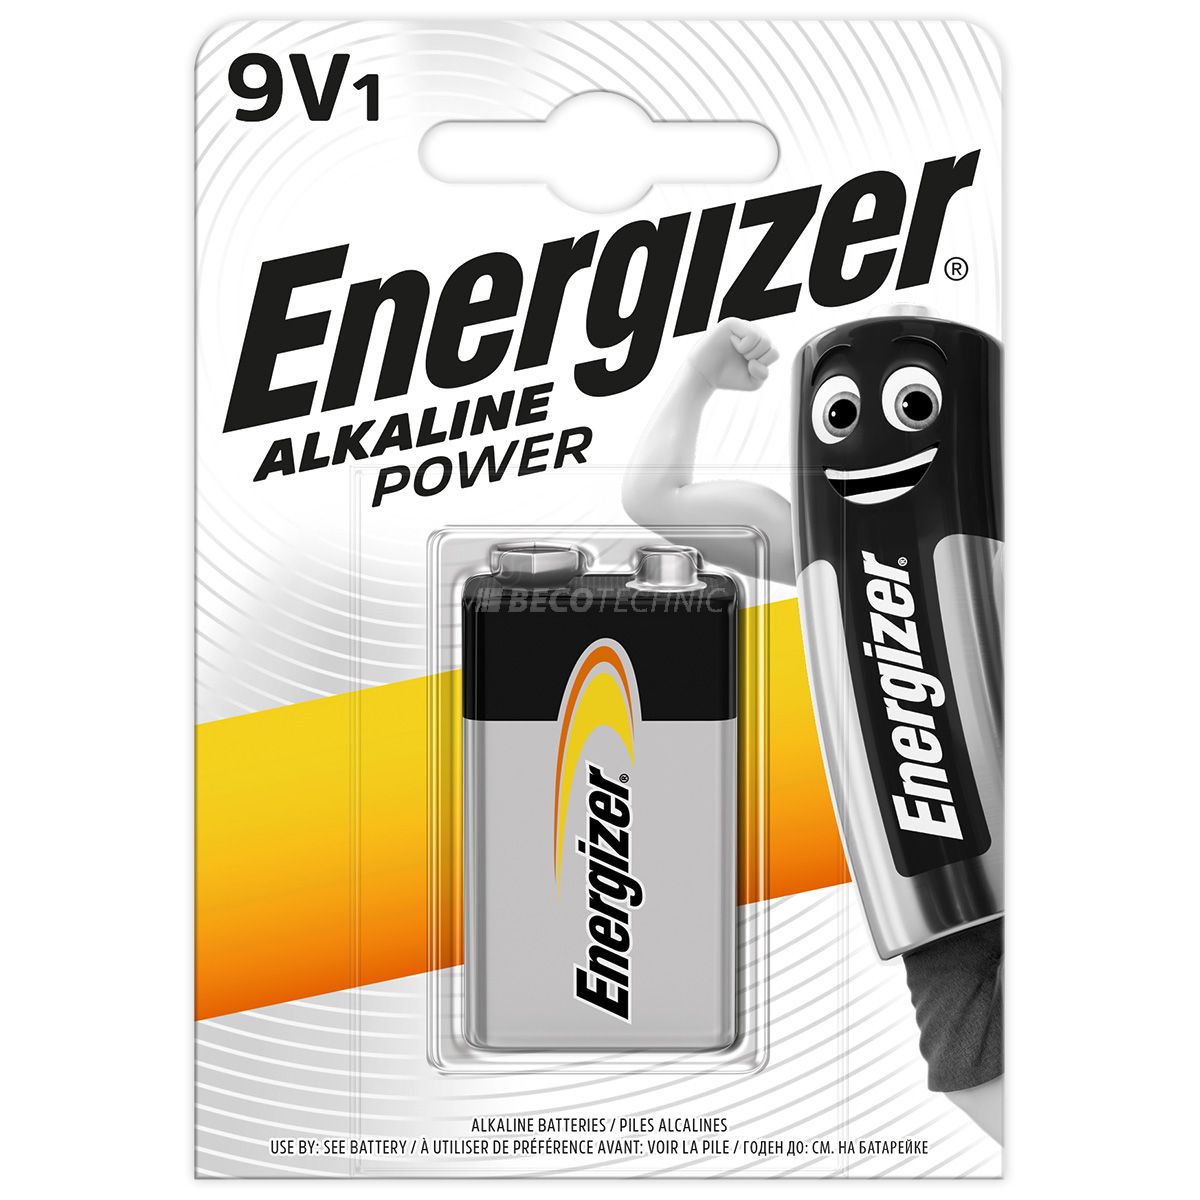 Energizer 9V-bloc Alkaline Power dans un blister 6LR61/522